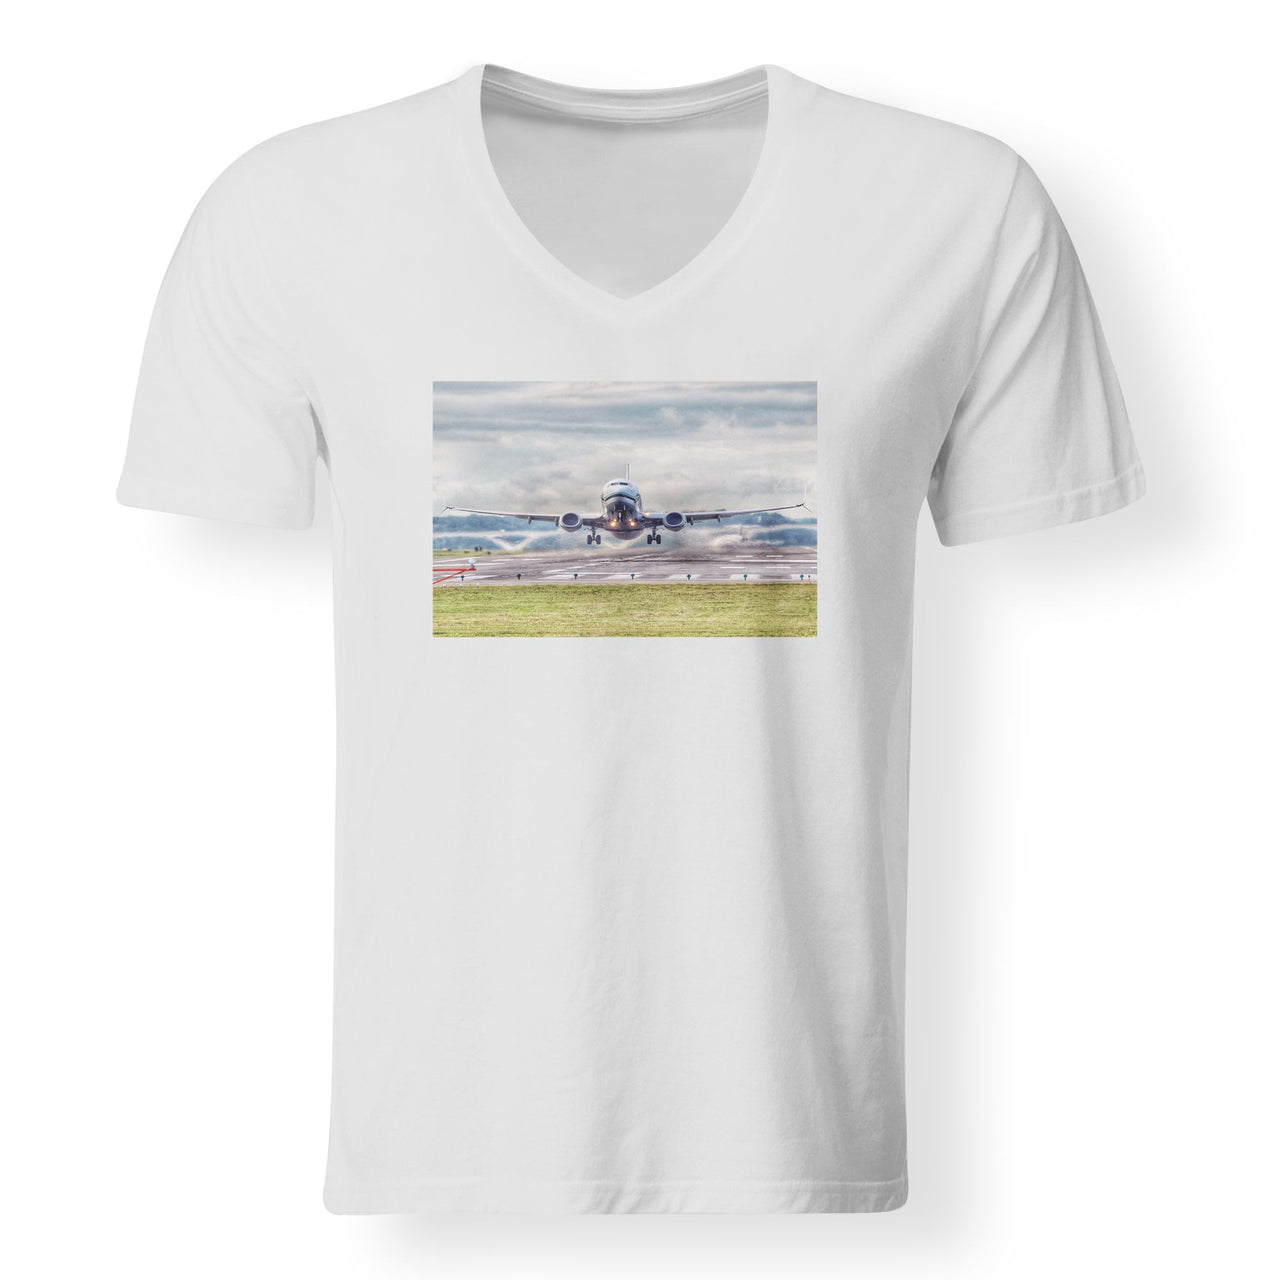 Departing Boeing 737 Designed V-Neck T-Shirts